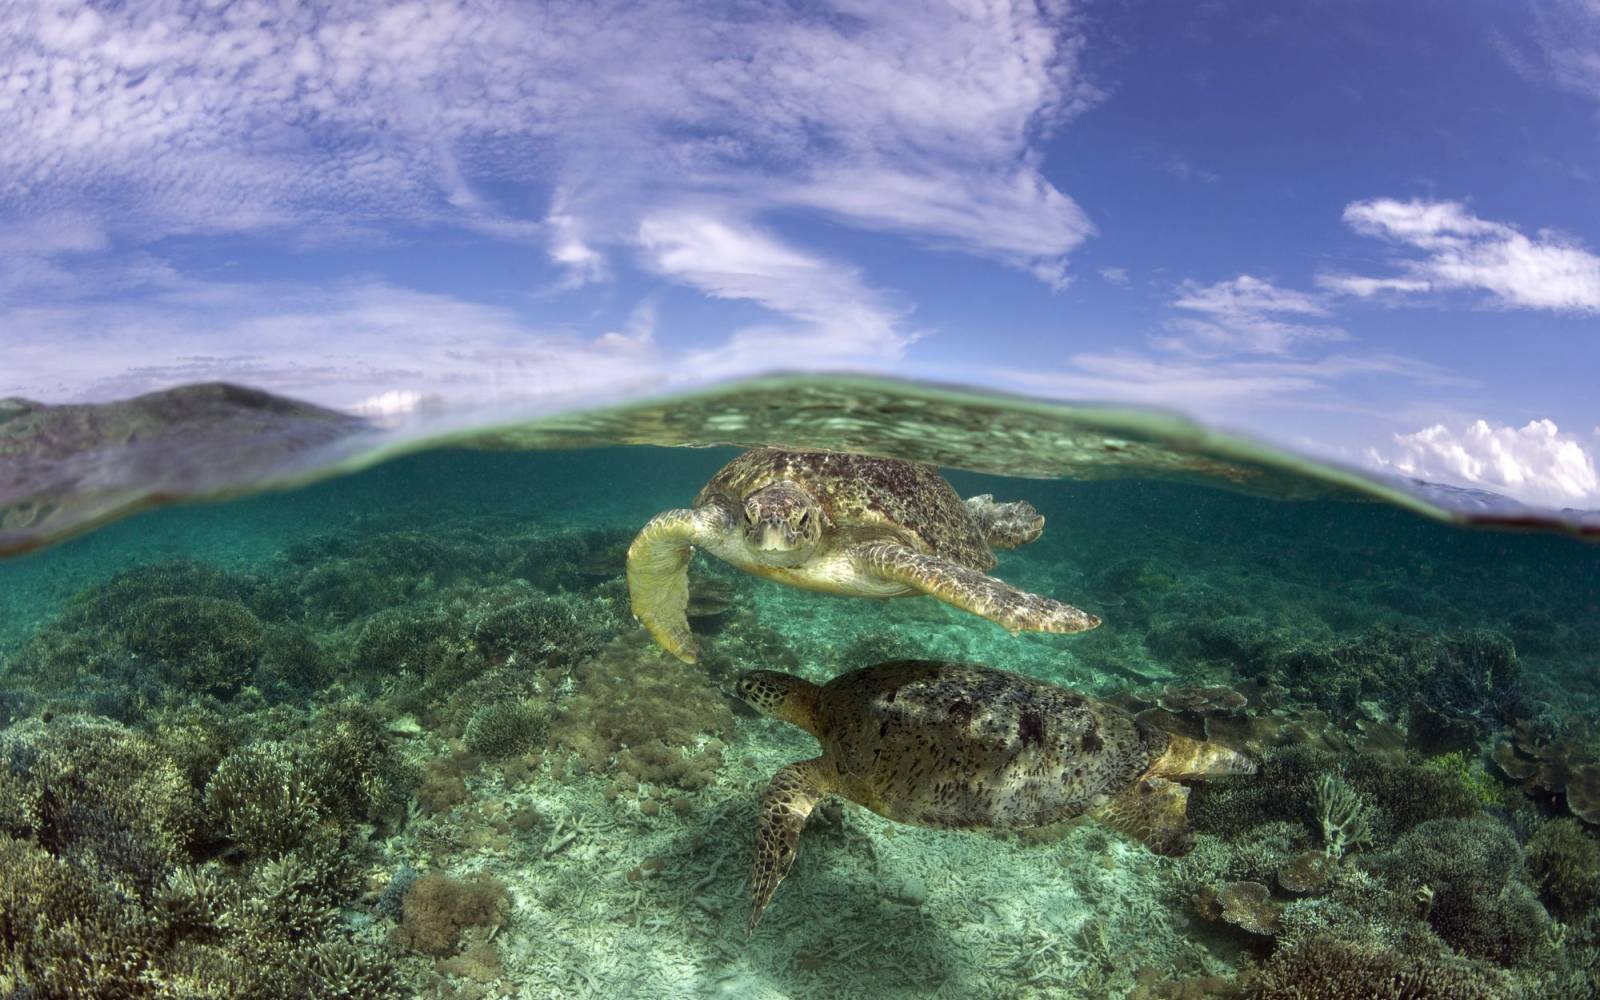 Deux tortues de mer verte sous l'eau